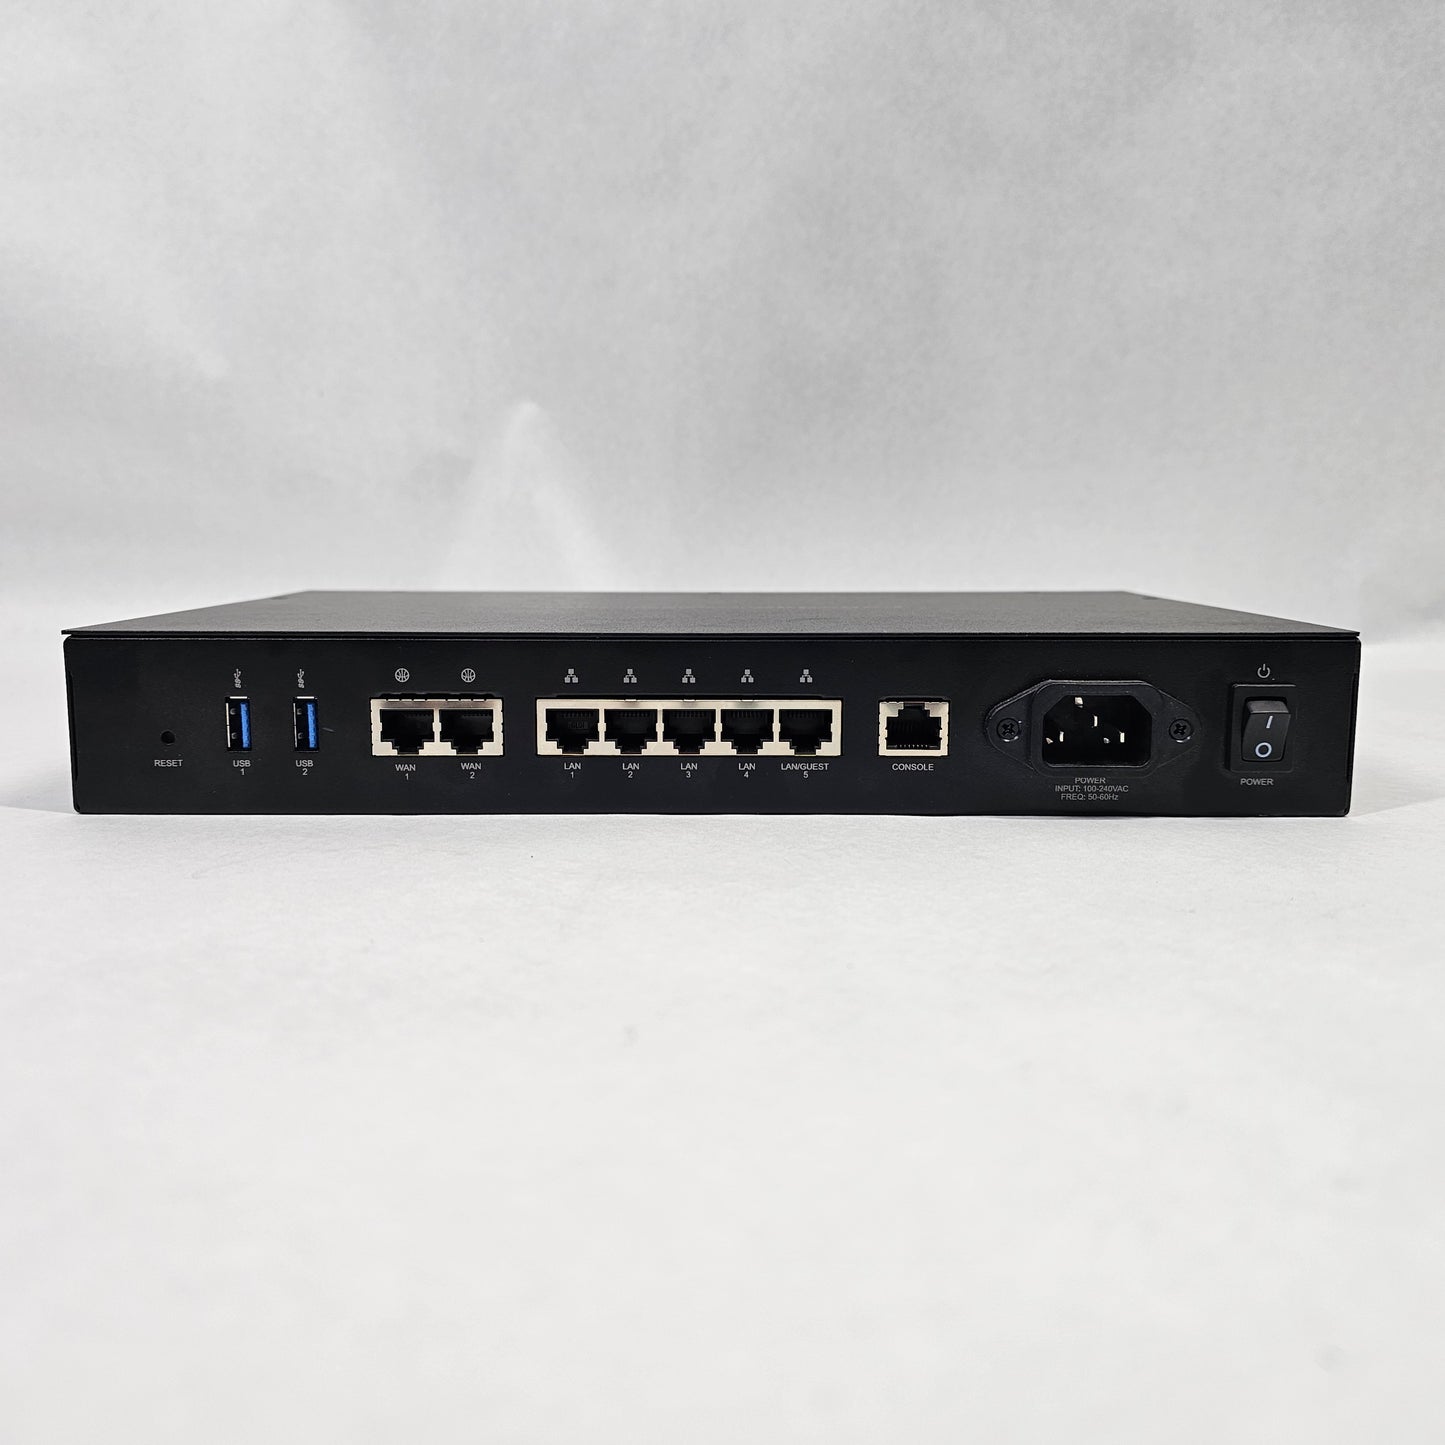 Pakedge RK-1 Dual-WAN High Throughput Gigabit Router